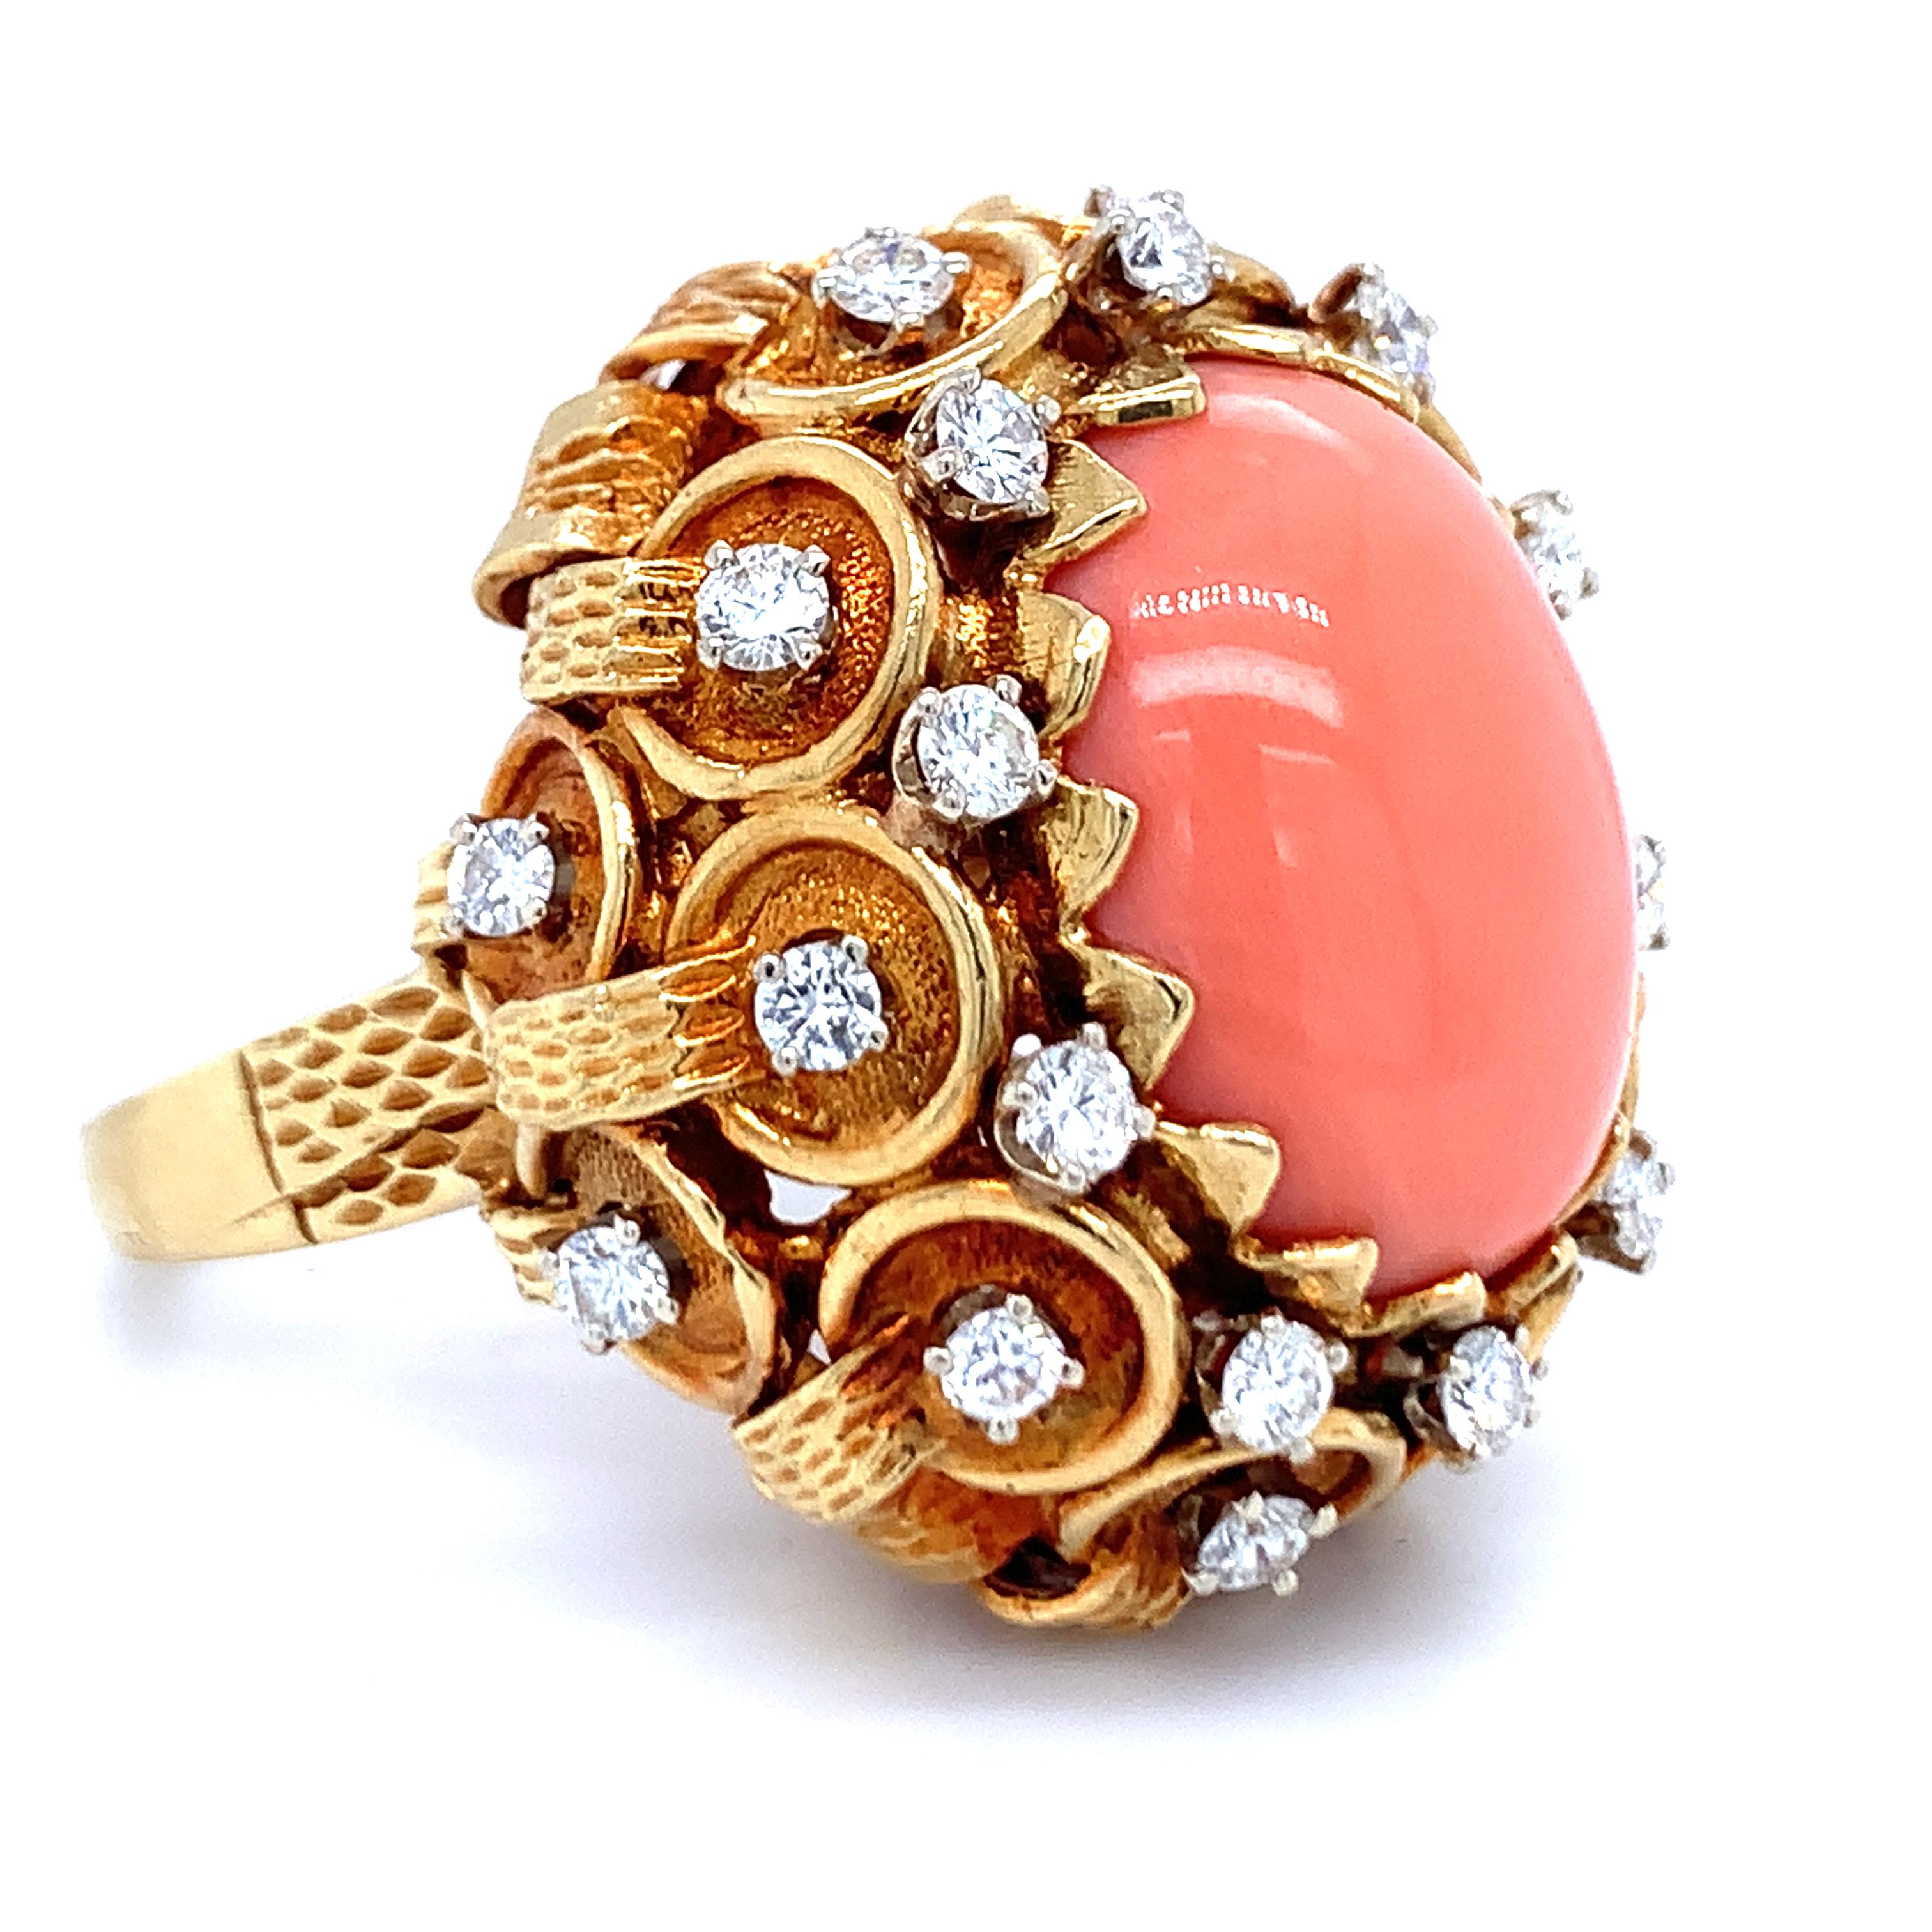 Bague en or jaune 18 carats, corail rose et diamant, ornée d'une pierre ovale en corail rose mesurant 20 x 15 millimètres. La bague est également rehaussée par vingt-quatre diamants ronds de taille brillant totalisant 1,50 ct. de couleur H et de